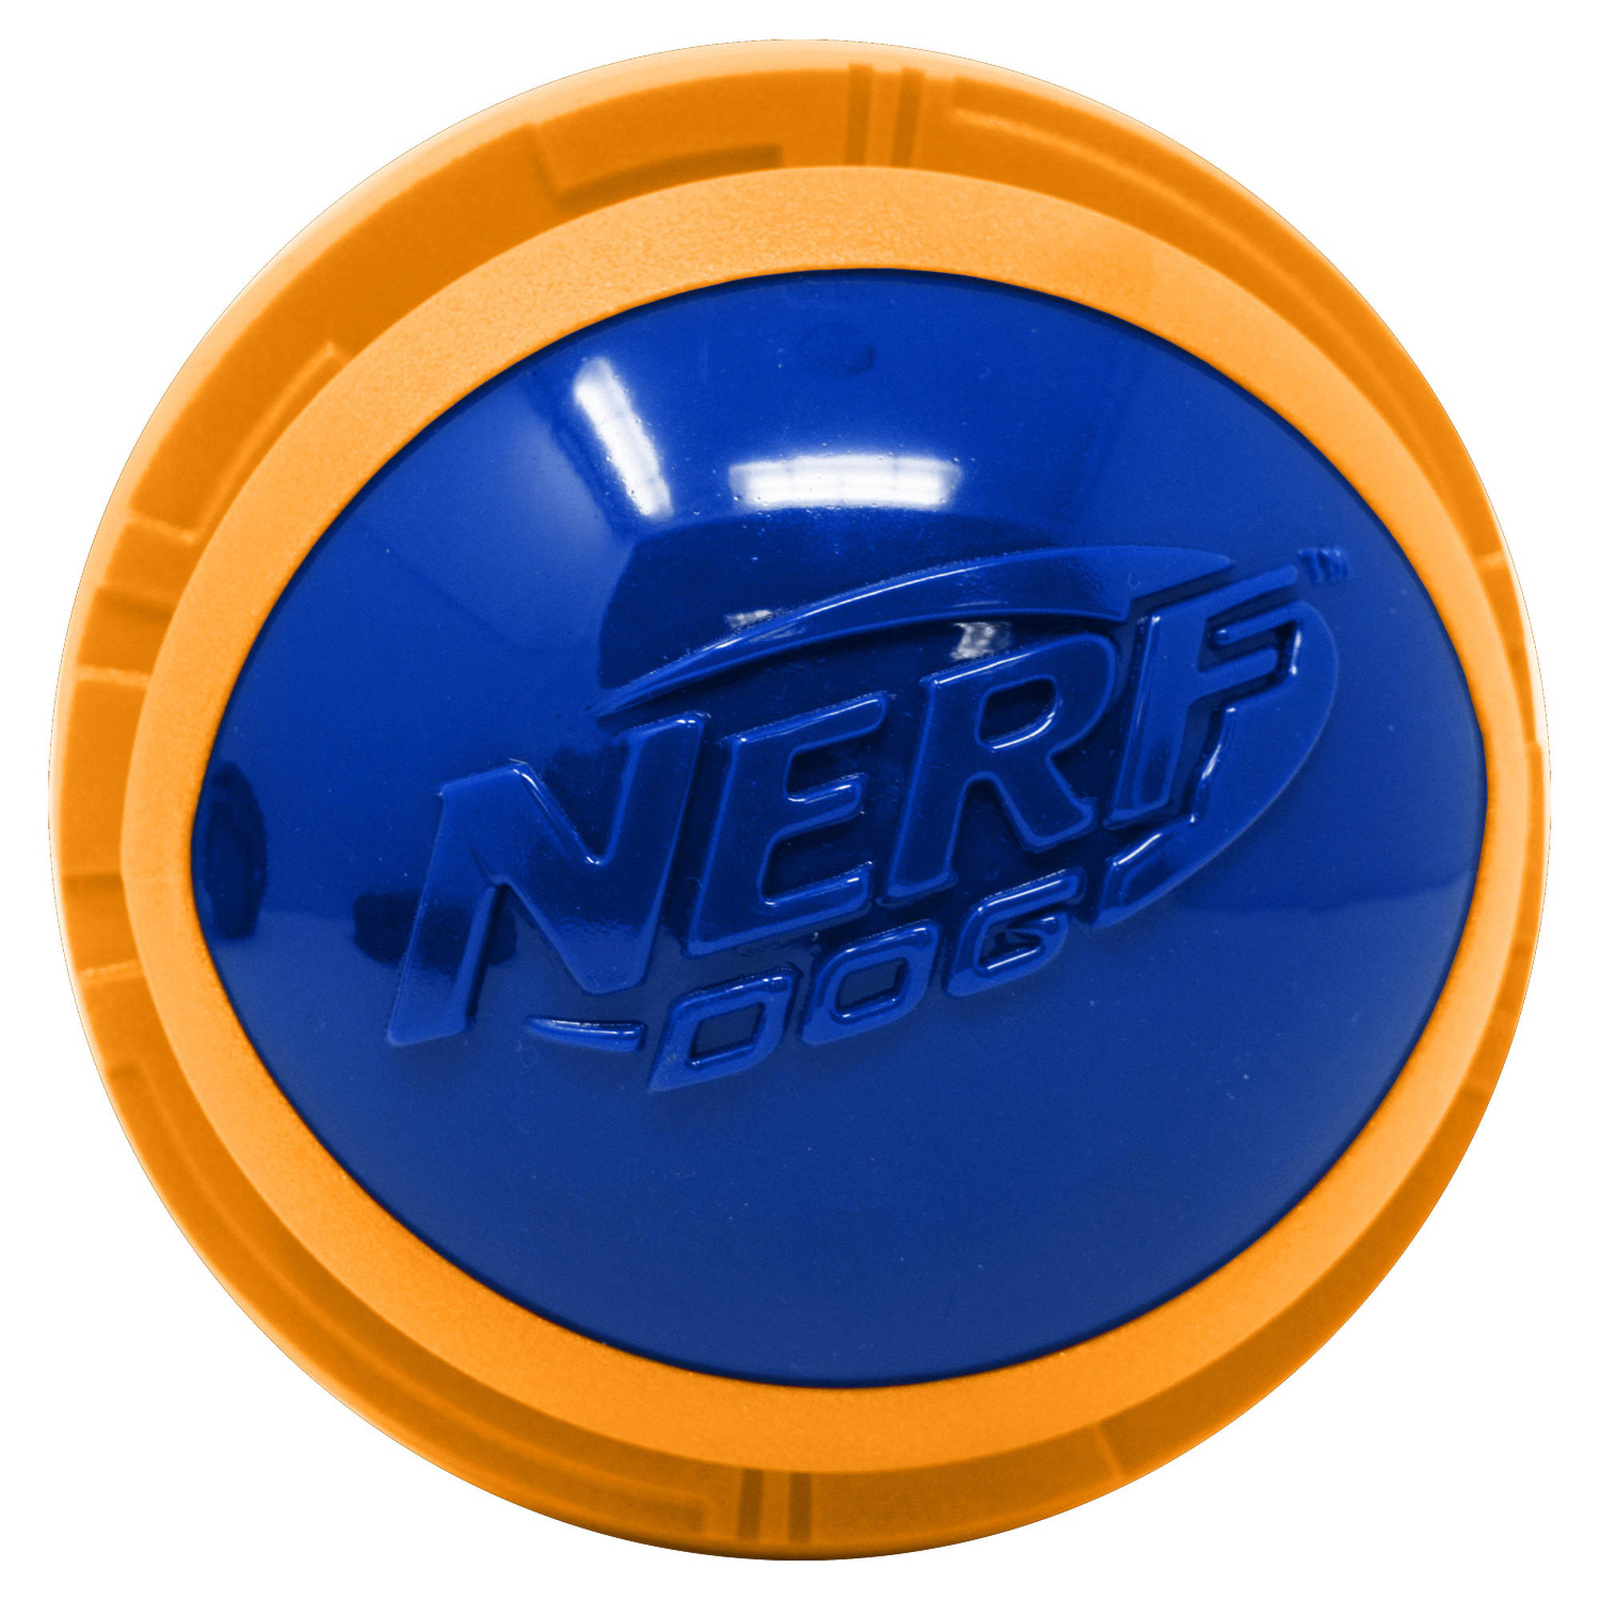 Nerf Nerf мяч из вспененной резины и термопластичной резины, 10 см (серия Мегатон), (синий/оранжевый) (380 г) nerf мяч для регби из вспененной резины и нейлона 18 см серия мегатон синийоранжевый 54412 0 263 кг